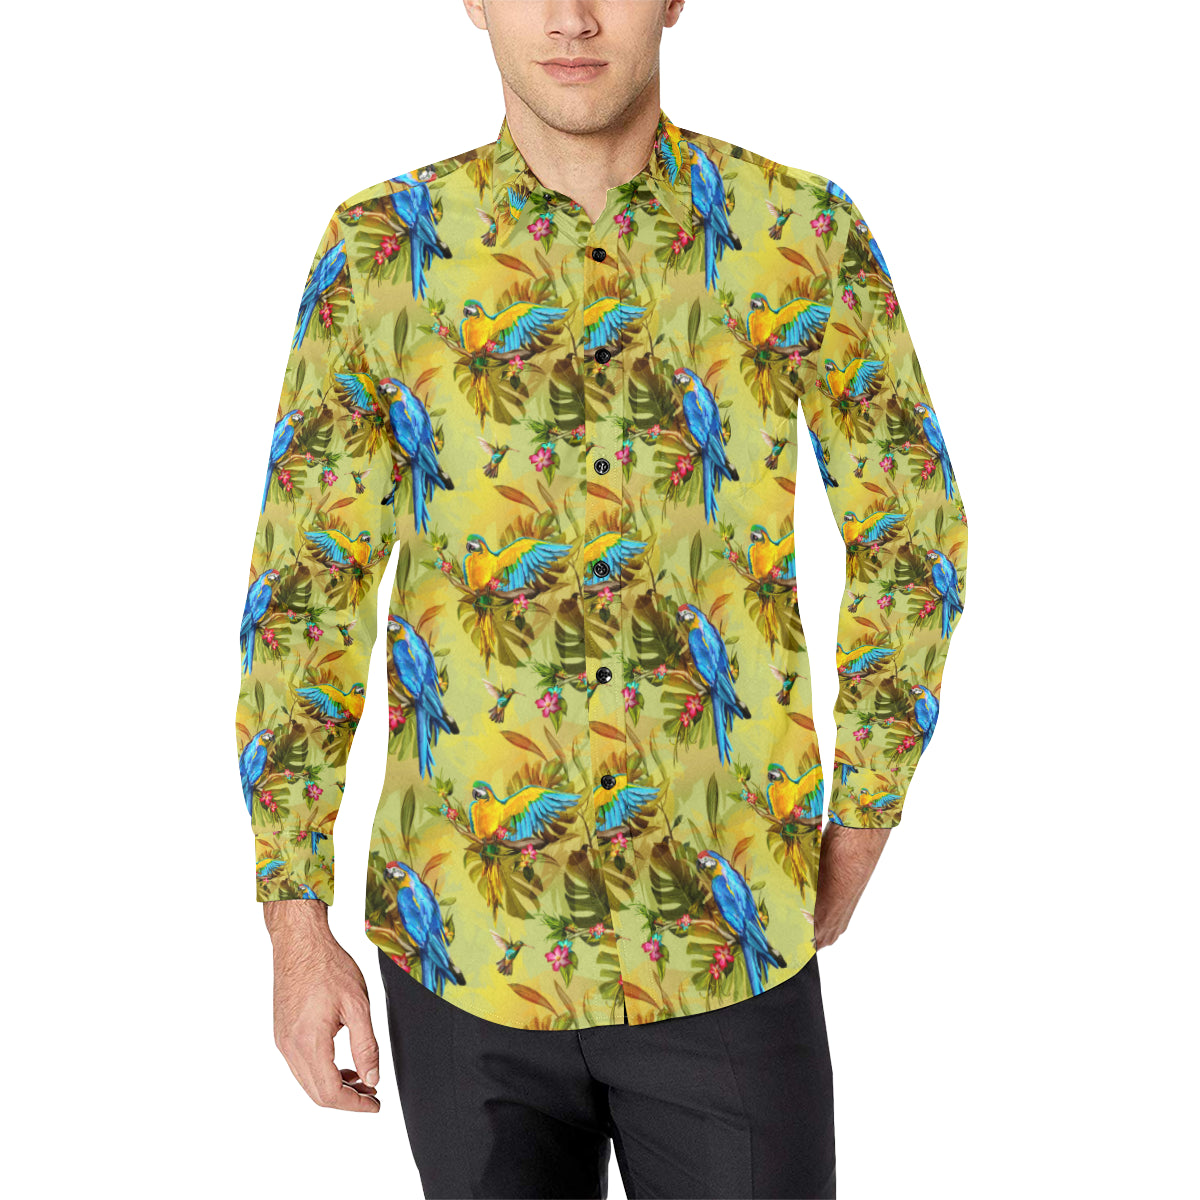 Parrot Pattern Print Design A02 Men's Long Sleeve Shirt